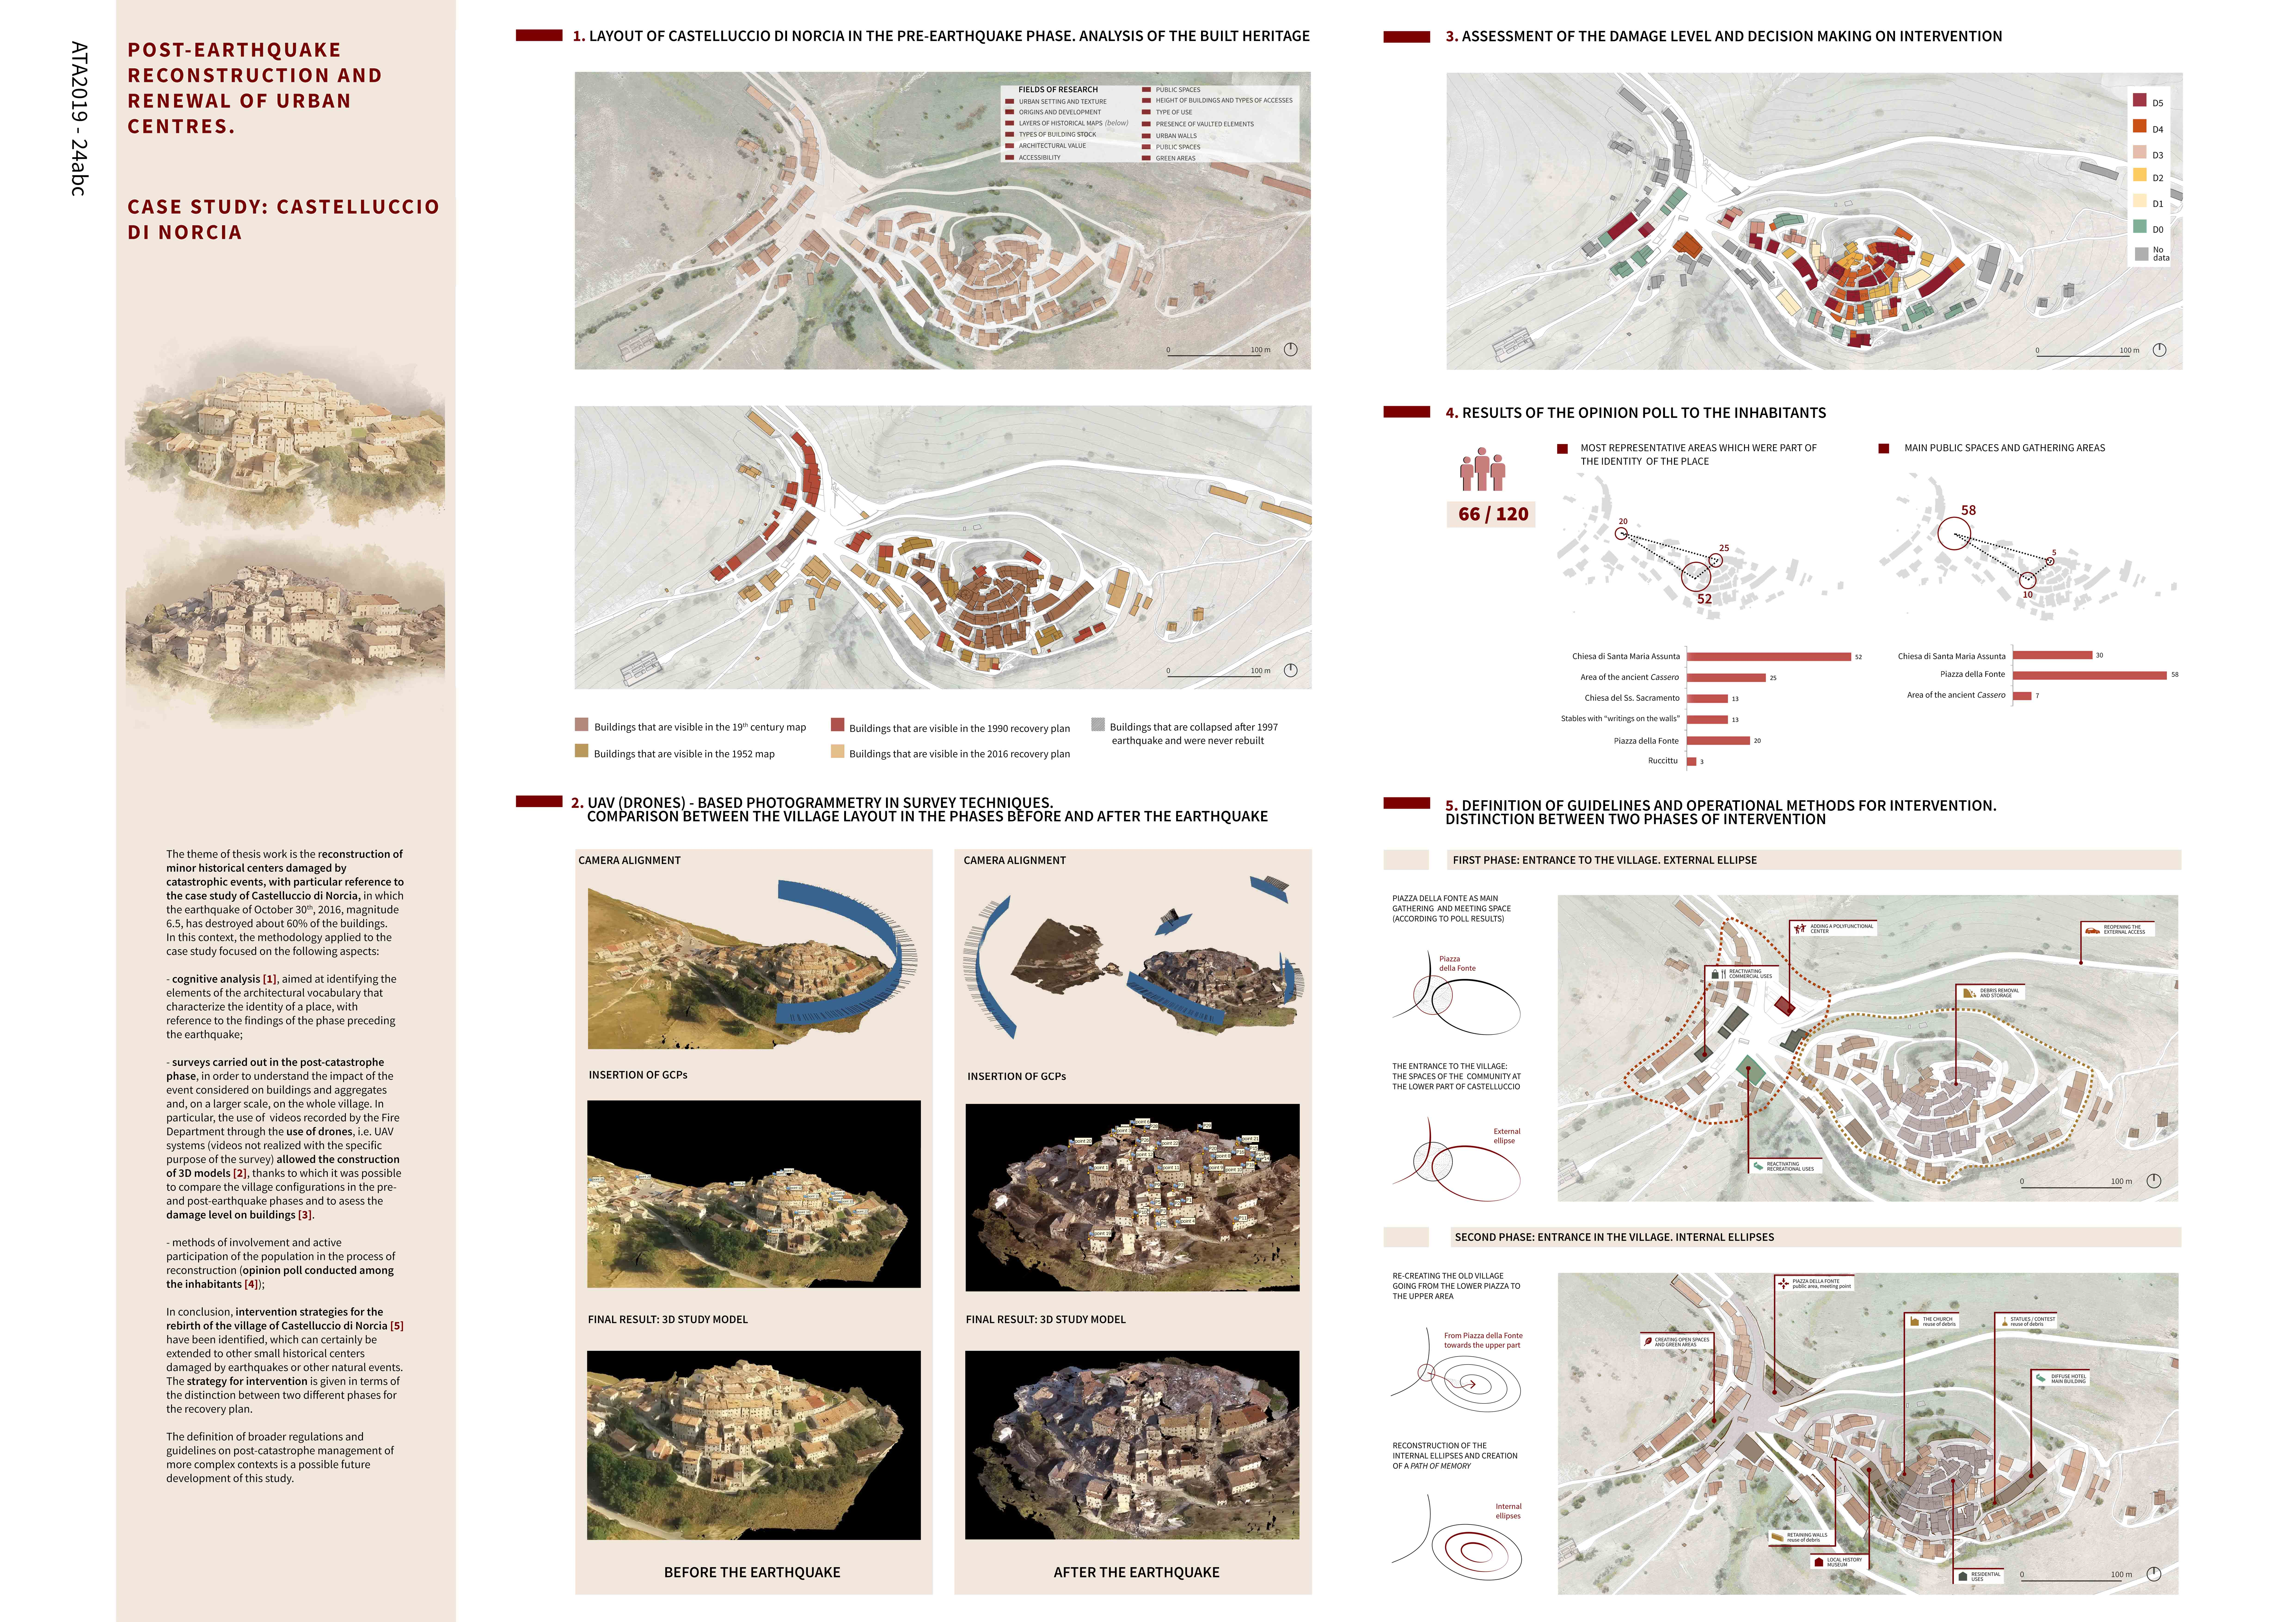 Post-earthquake reconstruction and renewal of urban centres. Case study: Castelluccio di Norcia. Board